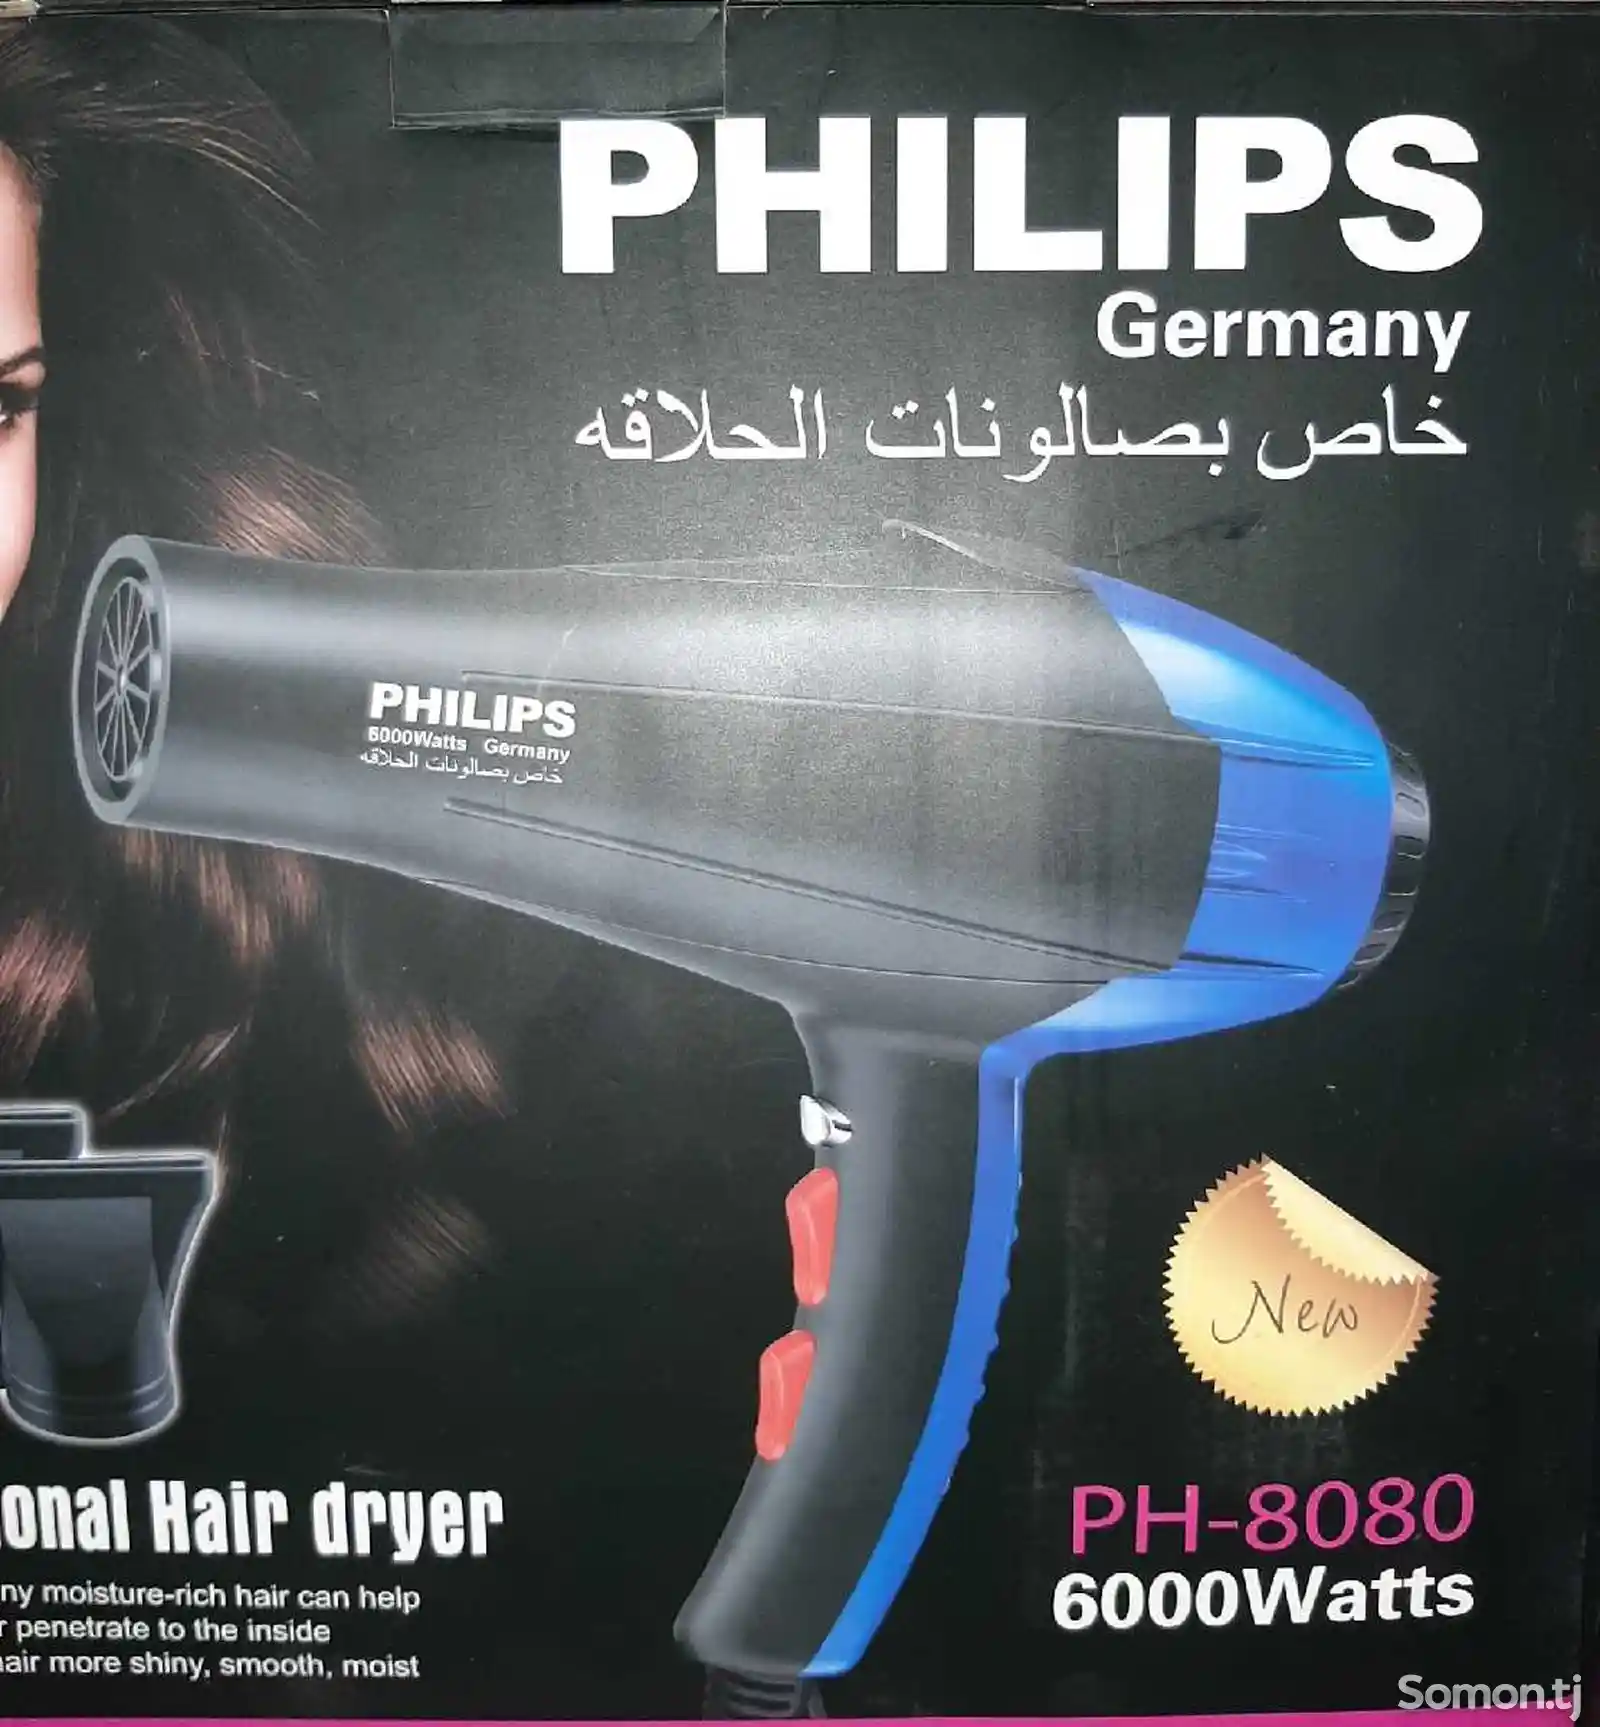 Фен Philips PH-8080